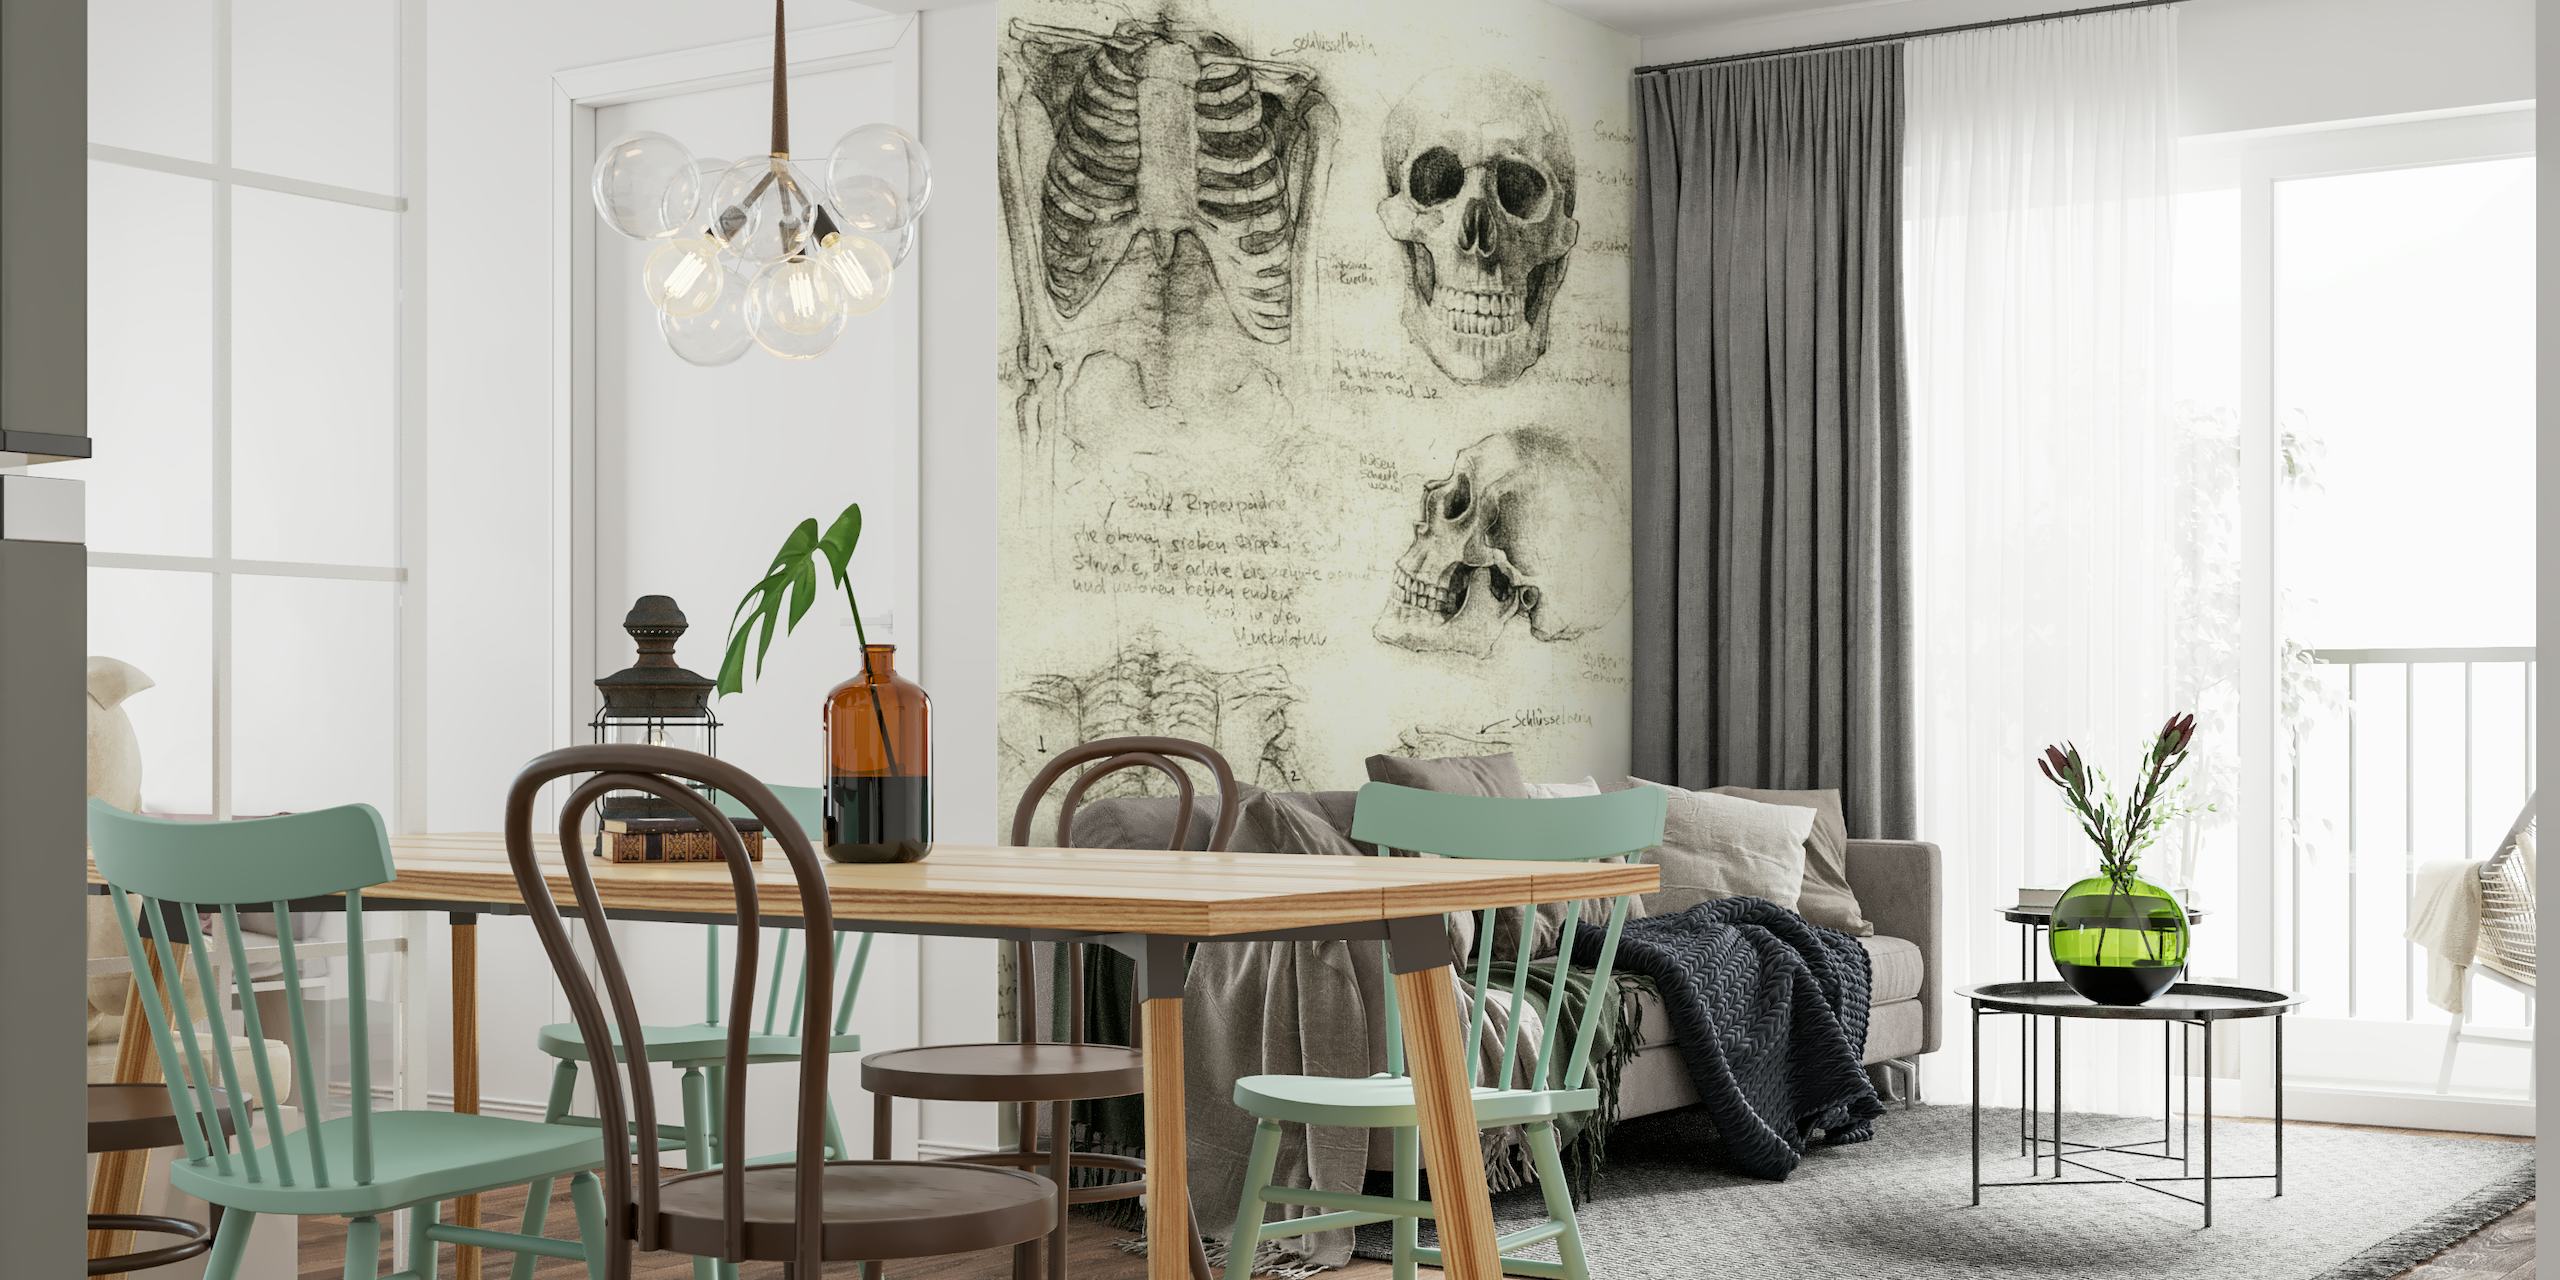 Wandbild mit anatomischen Skelettskizzen, das detaillierte Zeichnungen menschlicher Schädel und Knochen enthält